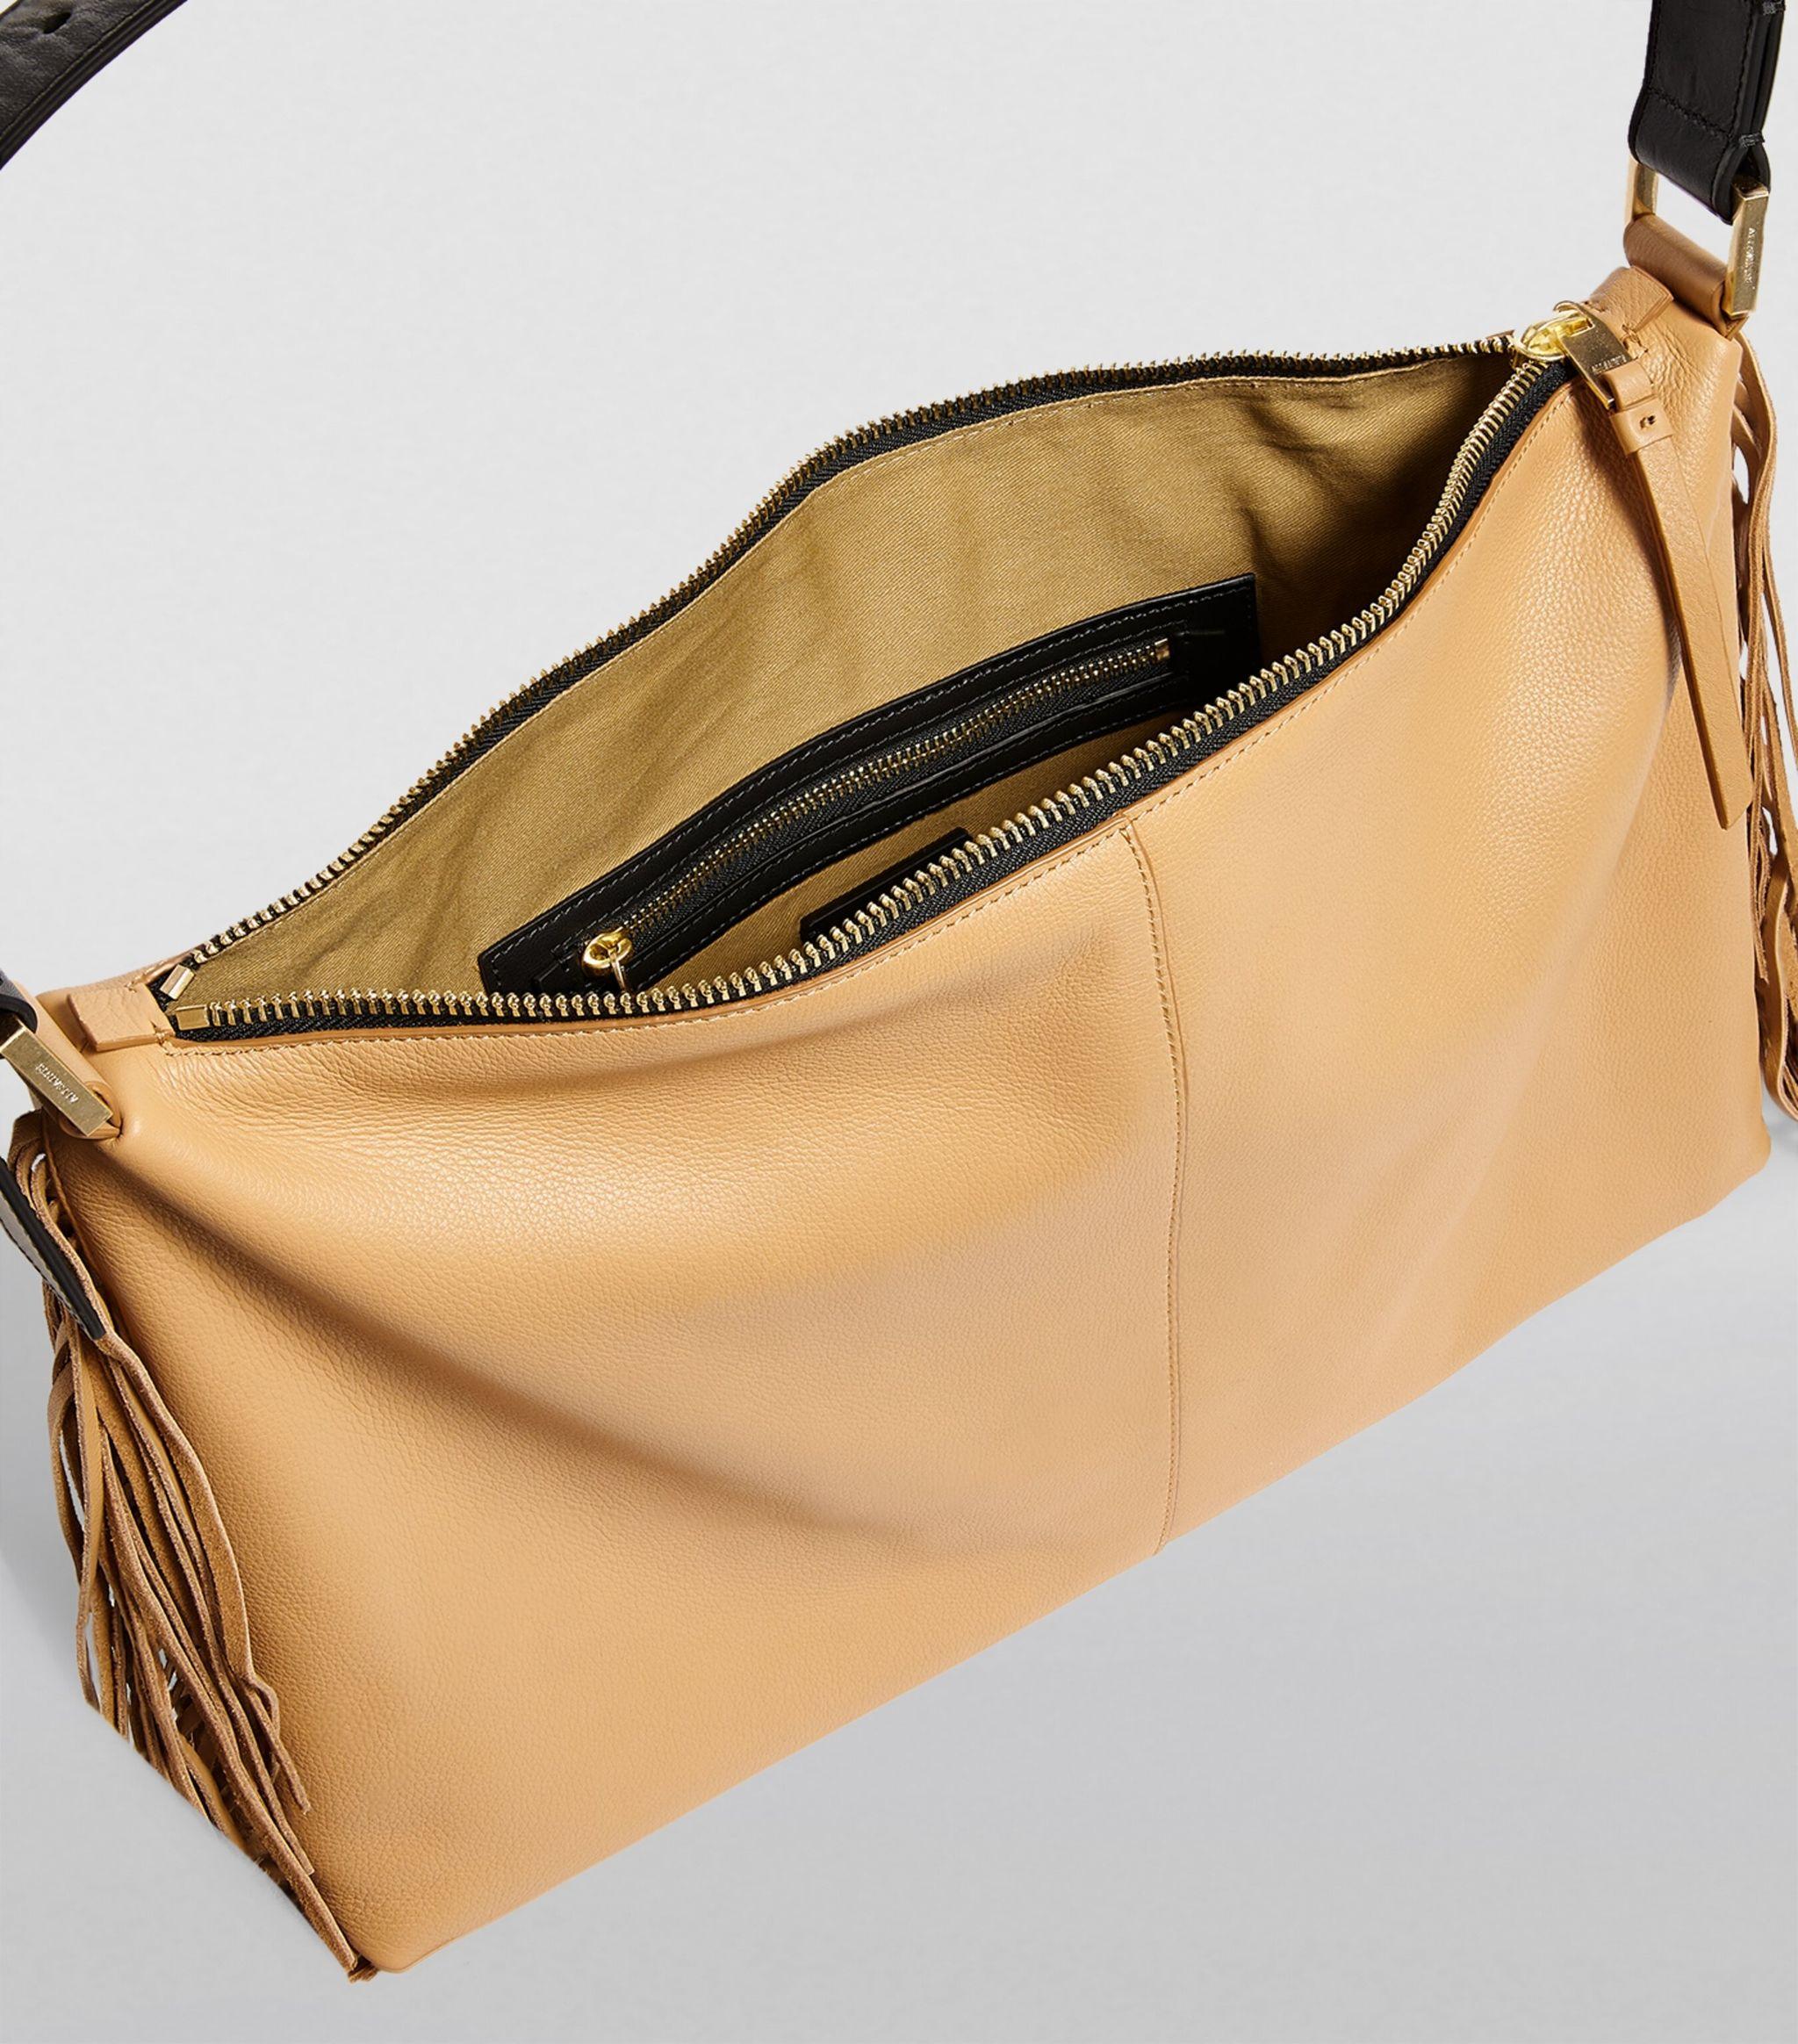 AllSaints Women's Brown Leather Edbury Fringe Shoulder Bag